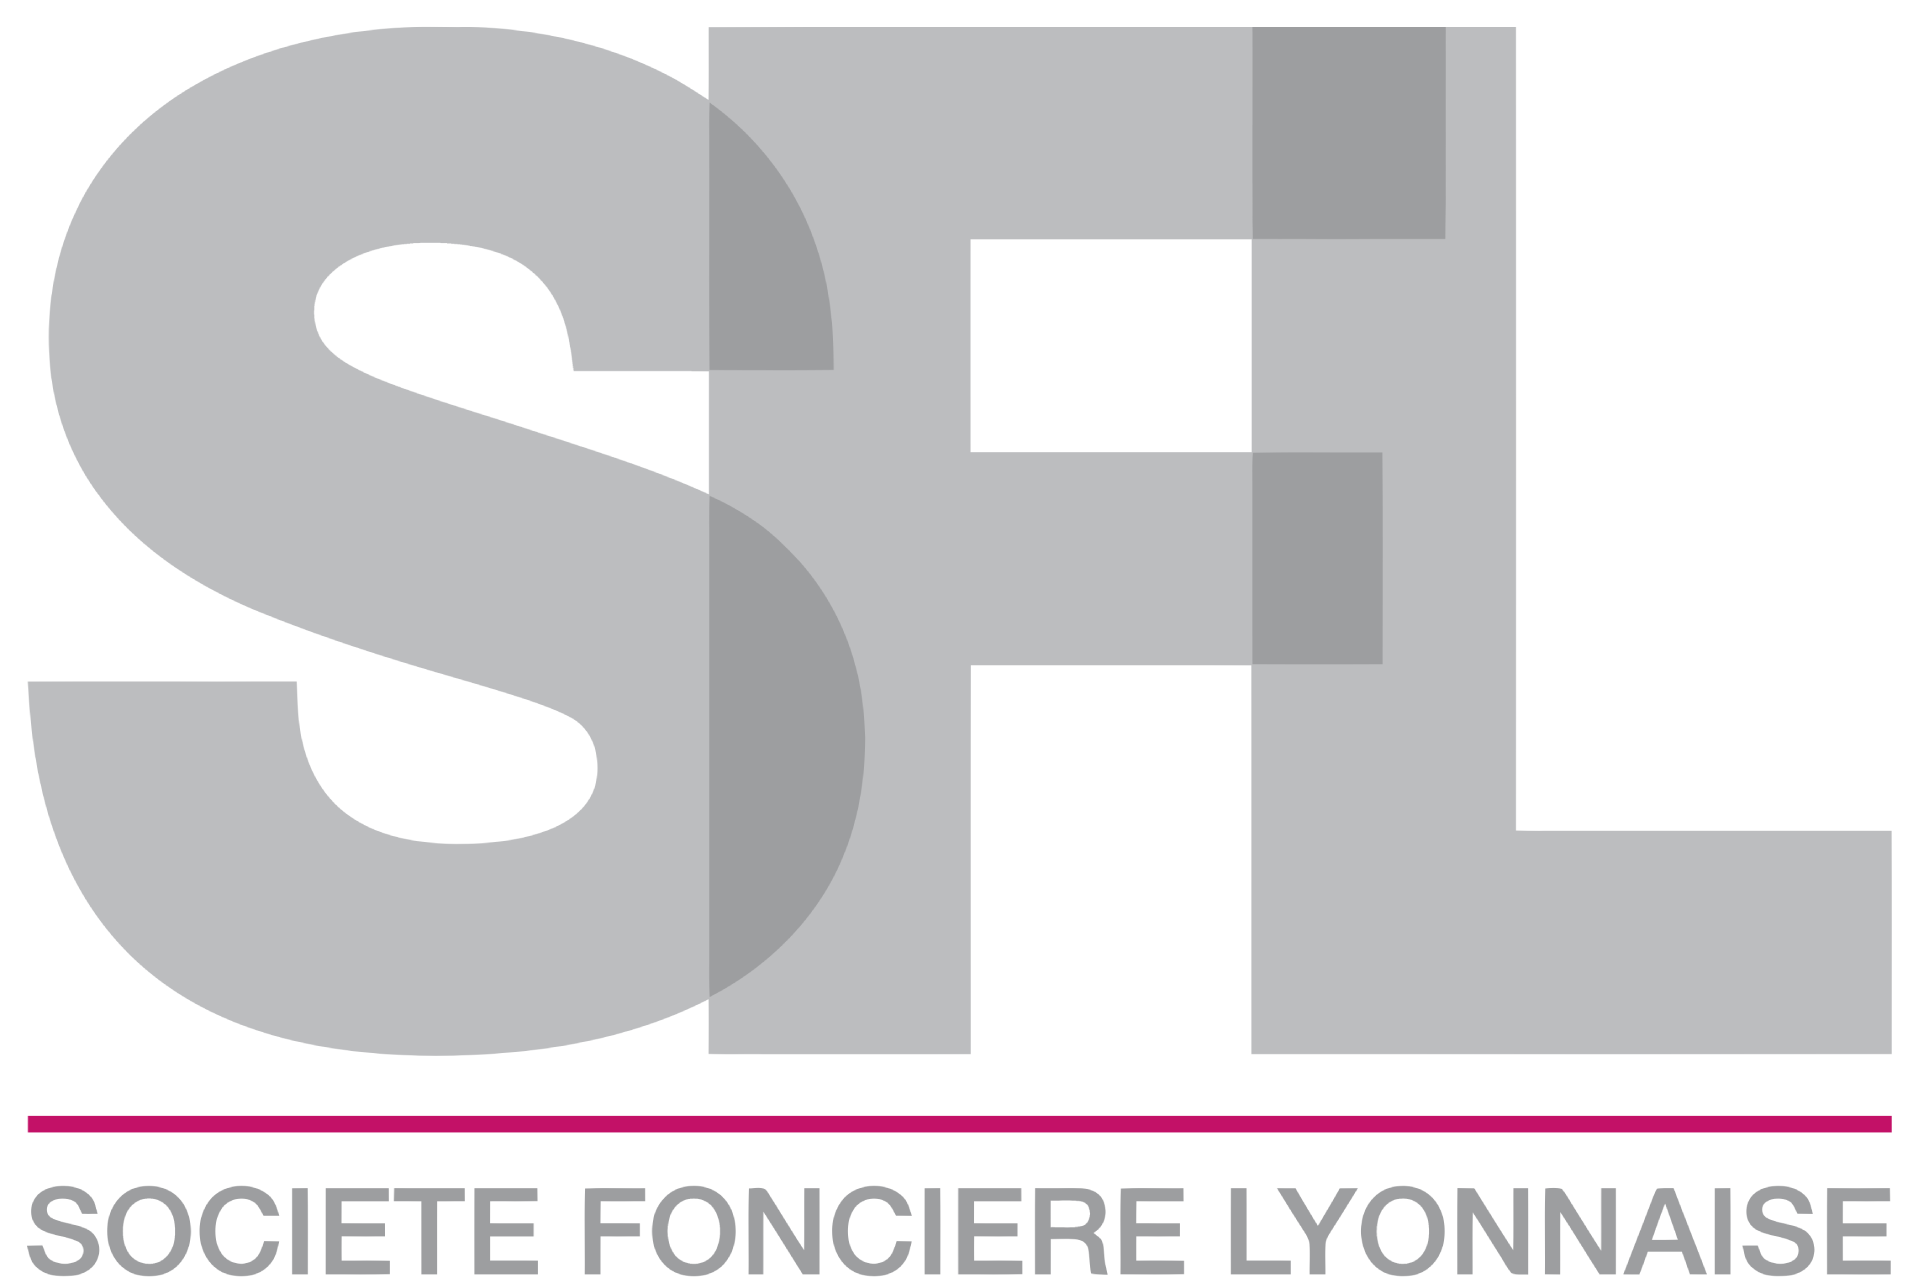 Société Foncière Lyonnaise logo large (transparent PNG)